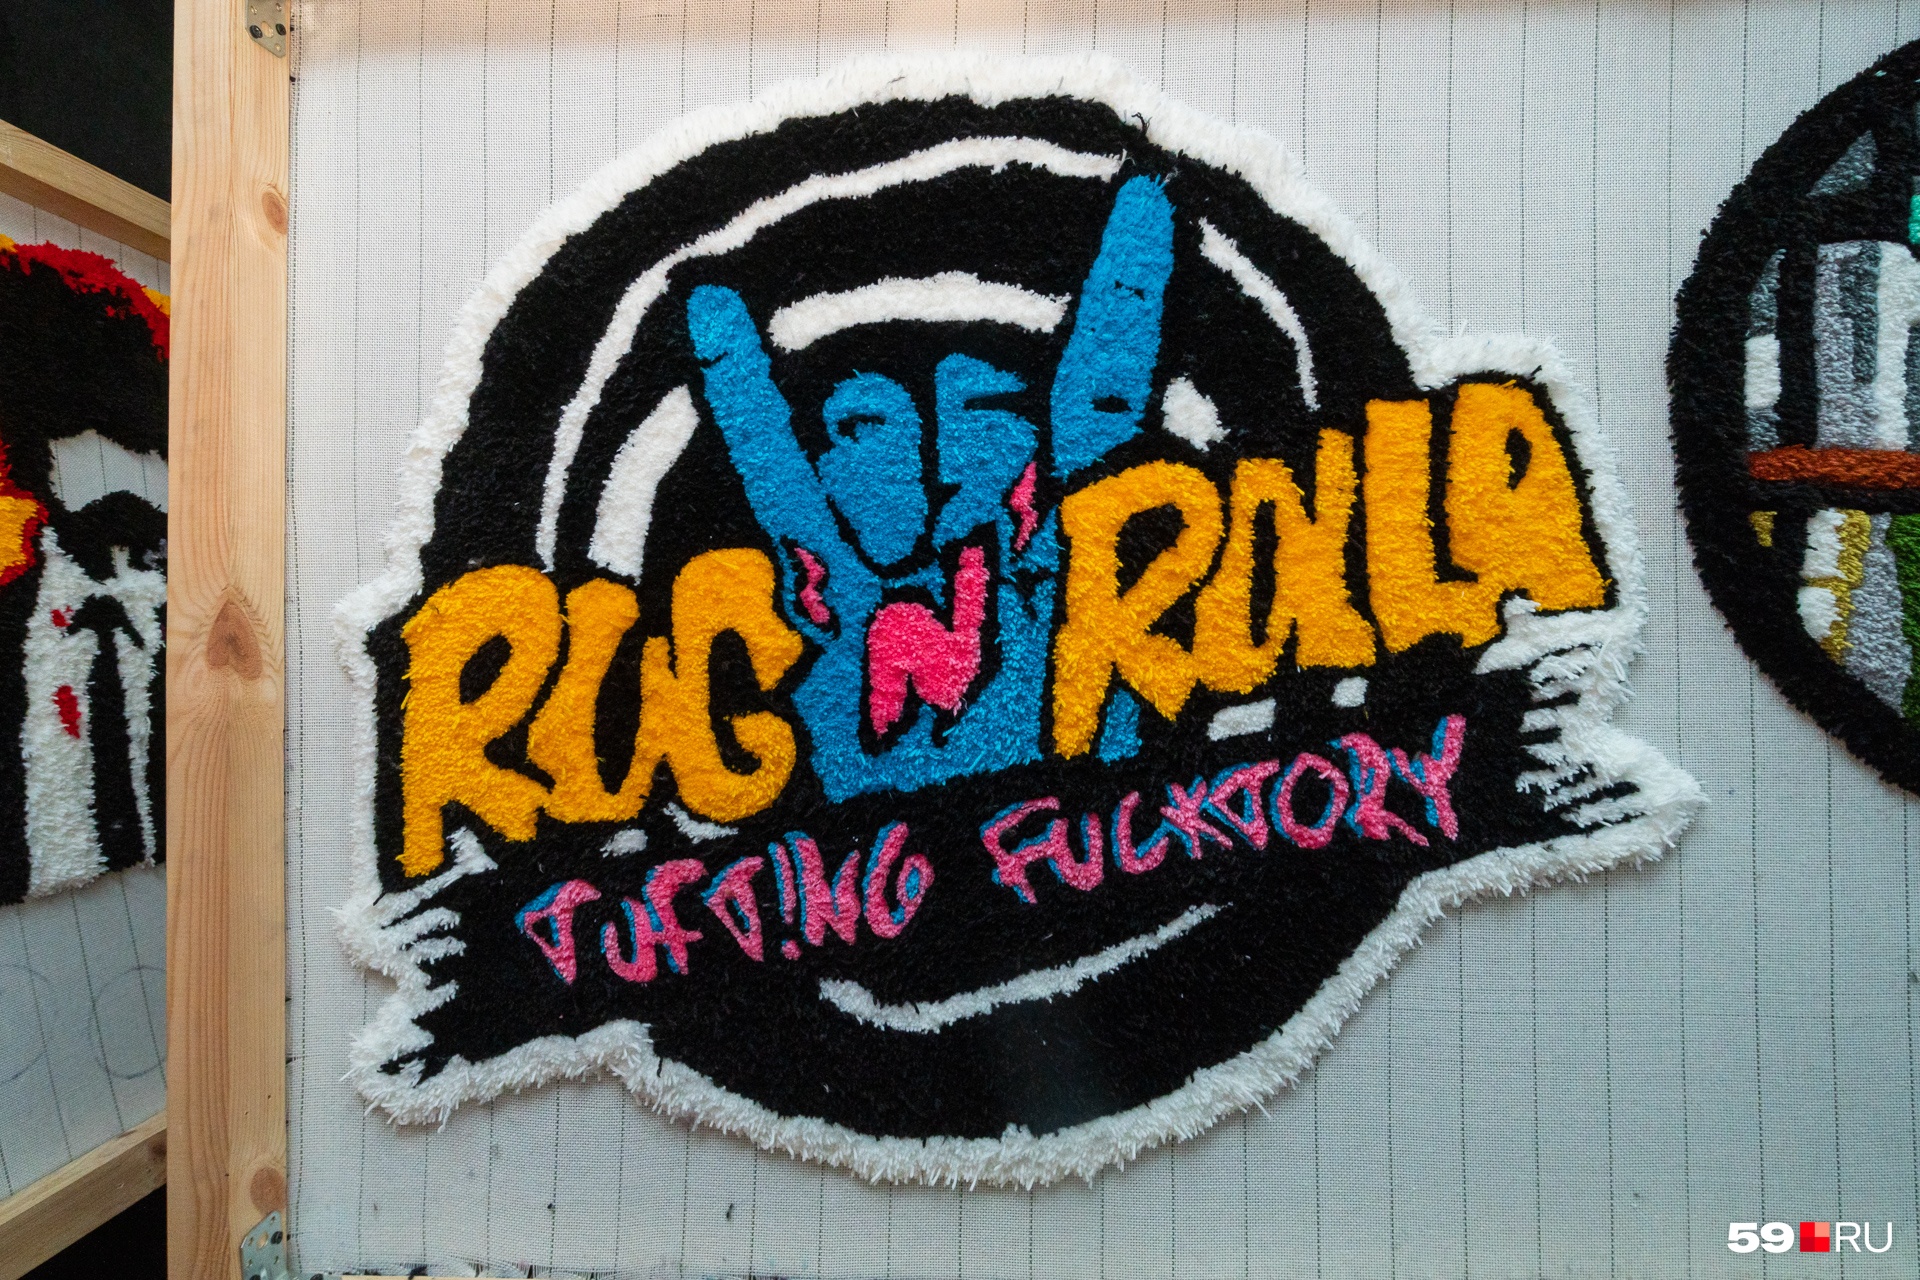 Логотип Rug’n’Rolla. Тоже на ковре